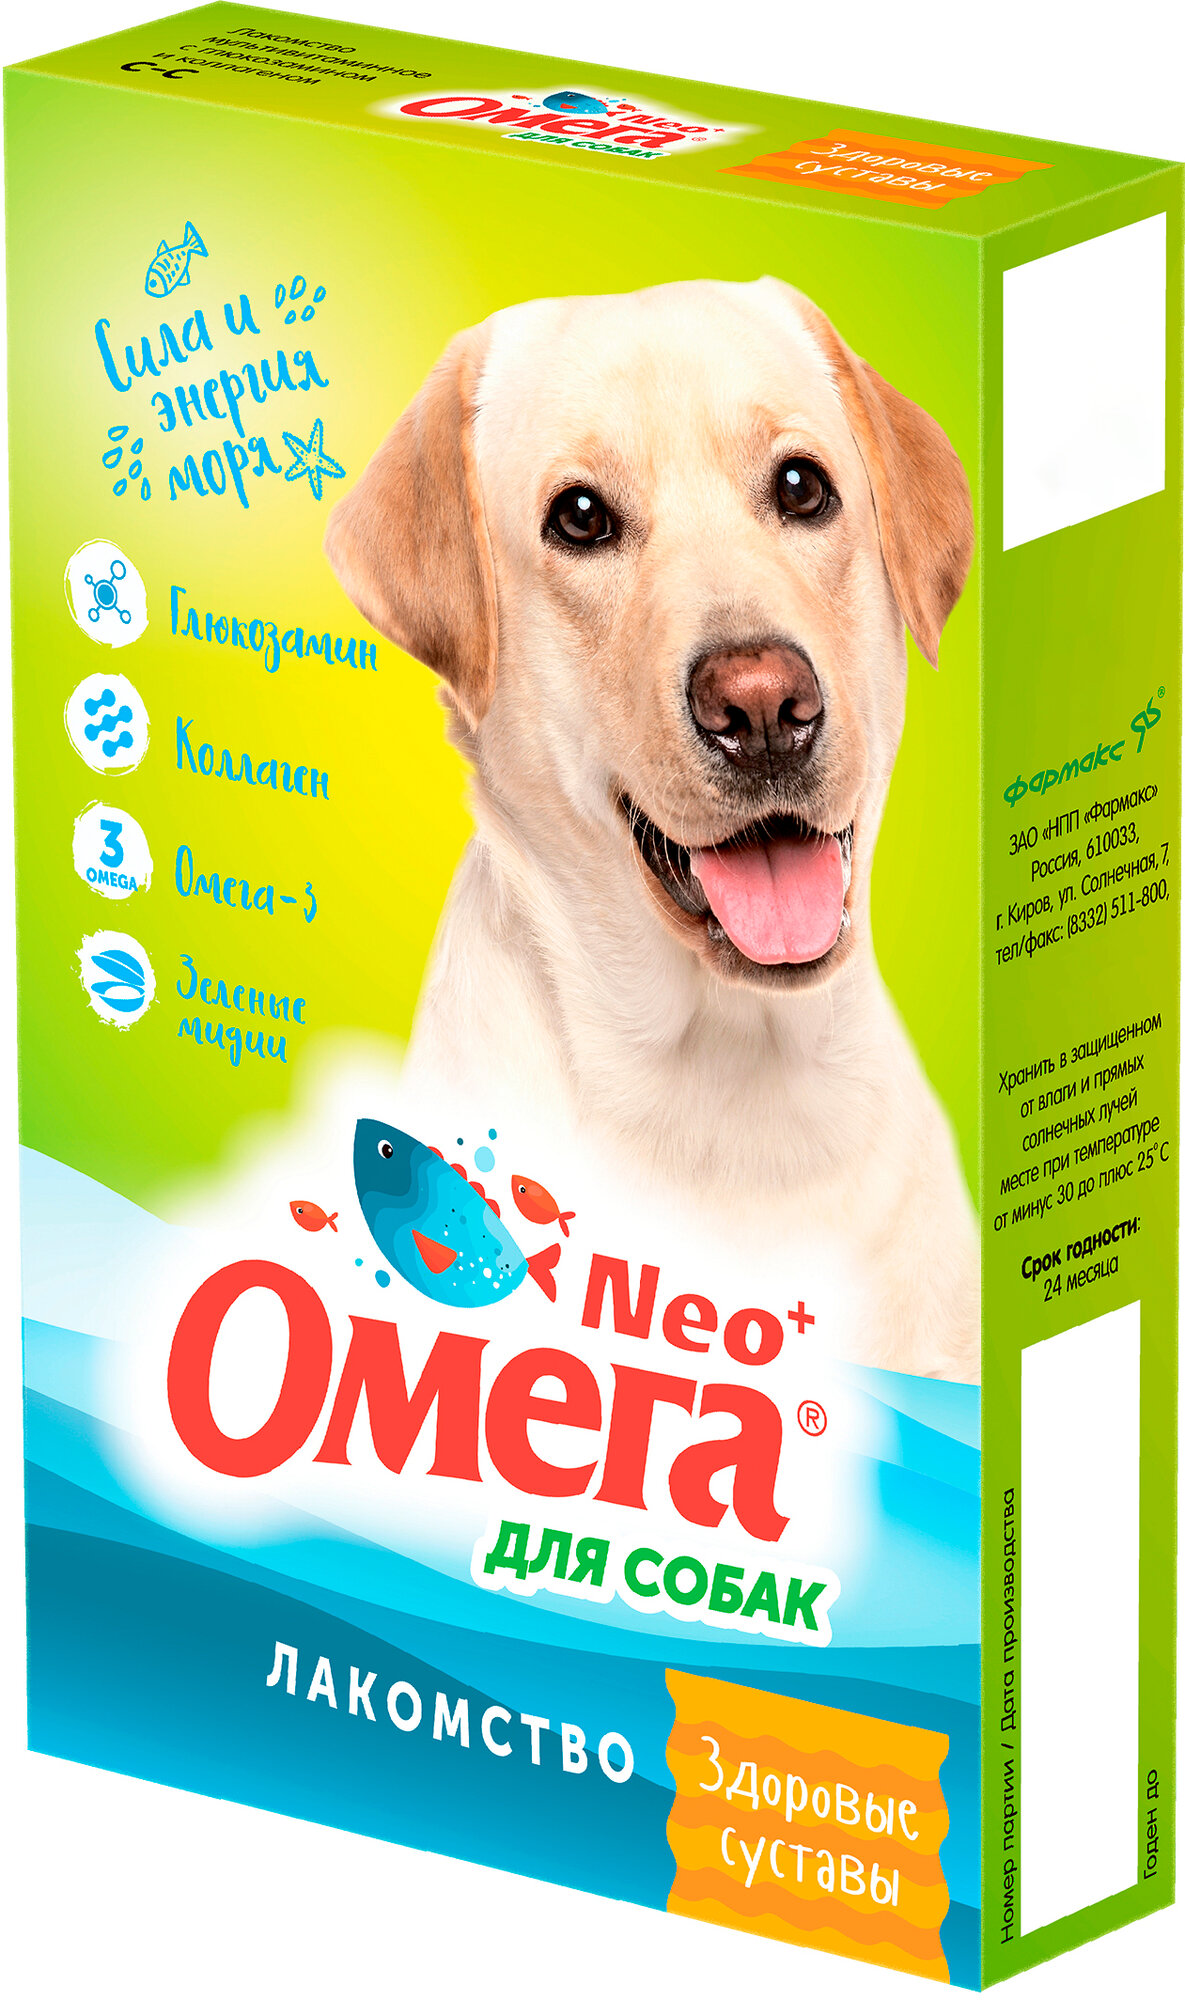 Лакомство Омега Neo+ (Фармакс) Здоровые суставы для собак, мультивитаминное, с глюкозамином и коллагеном, 90 таб